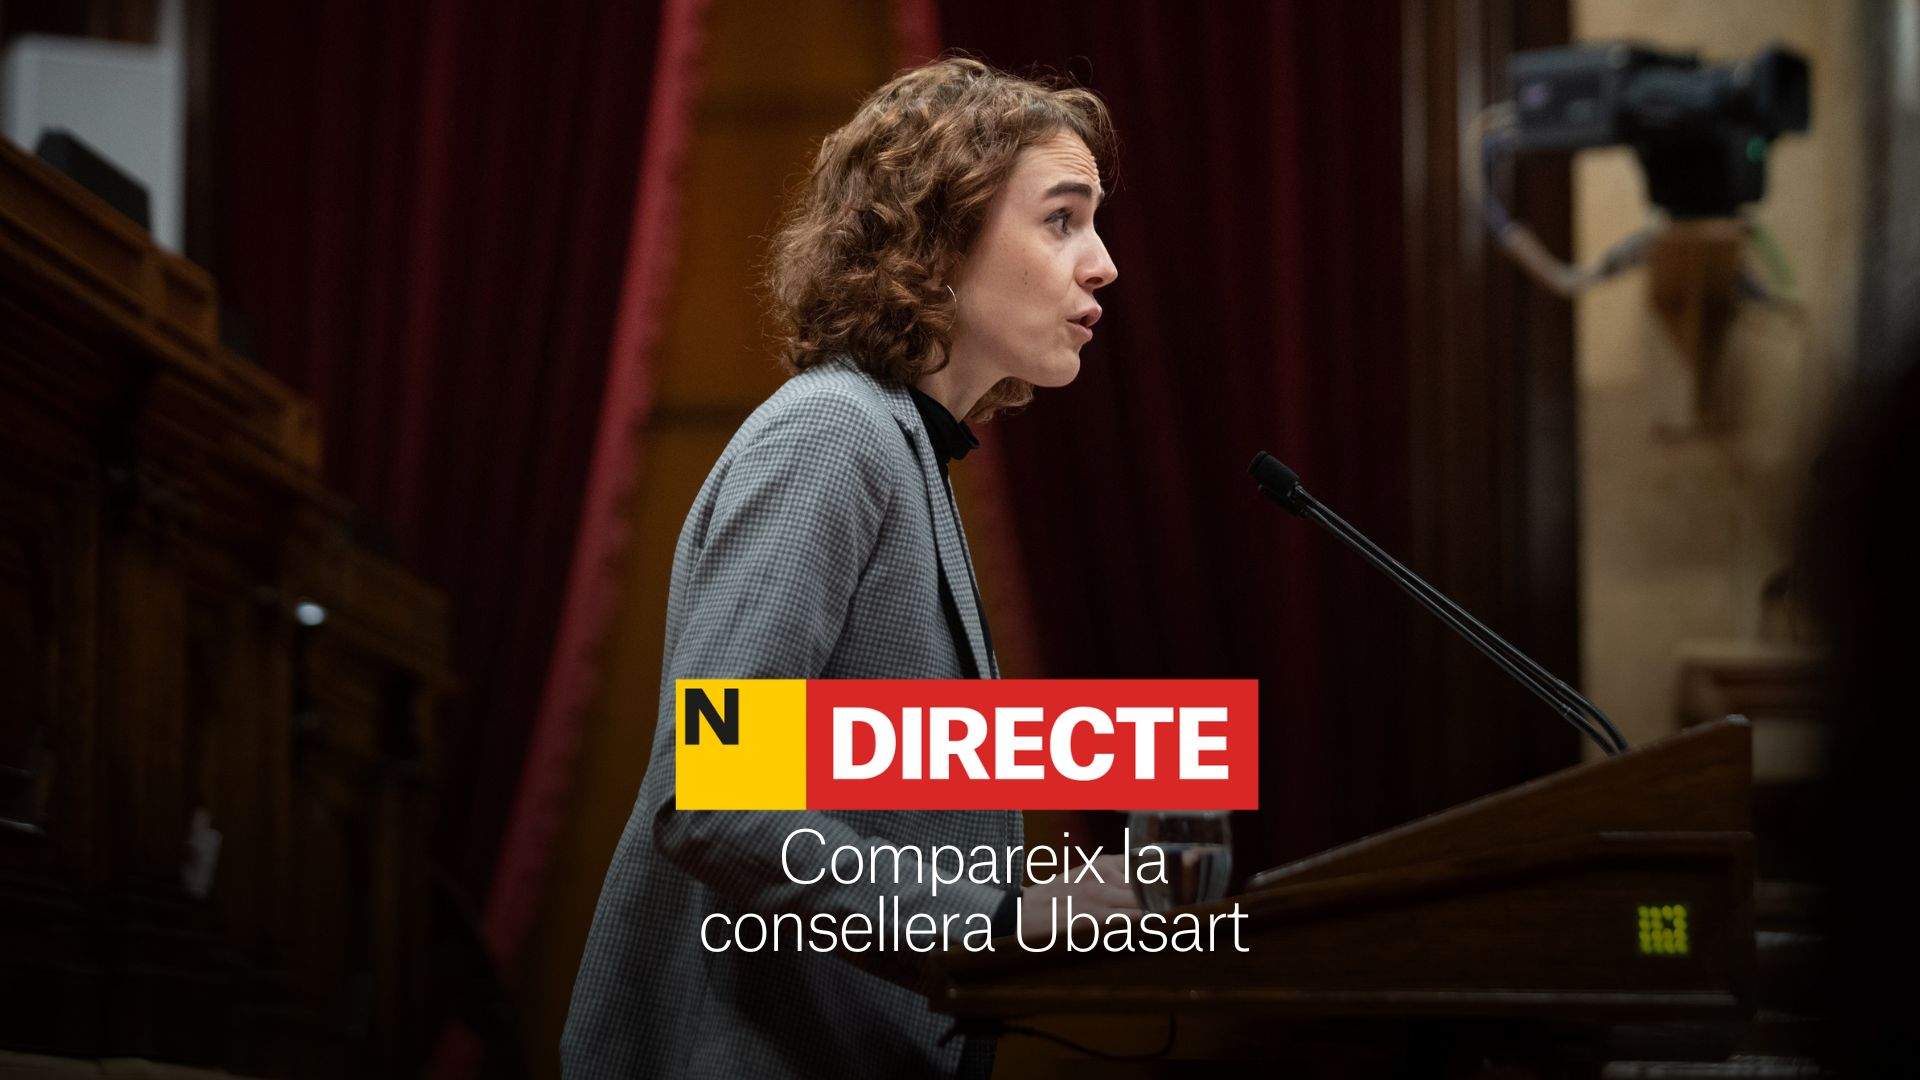 La consellera Ubasart compareix al Parlament de Catalunya, DIRECTE